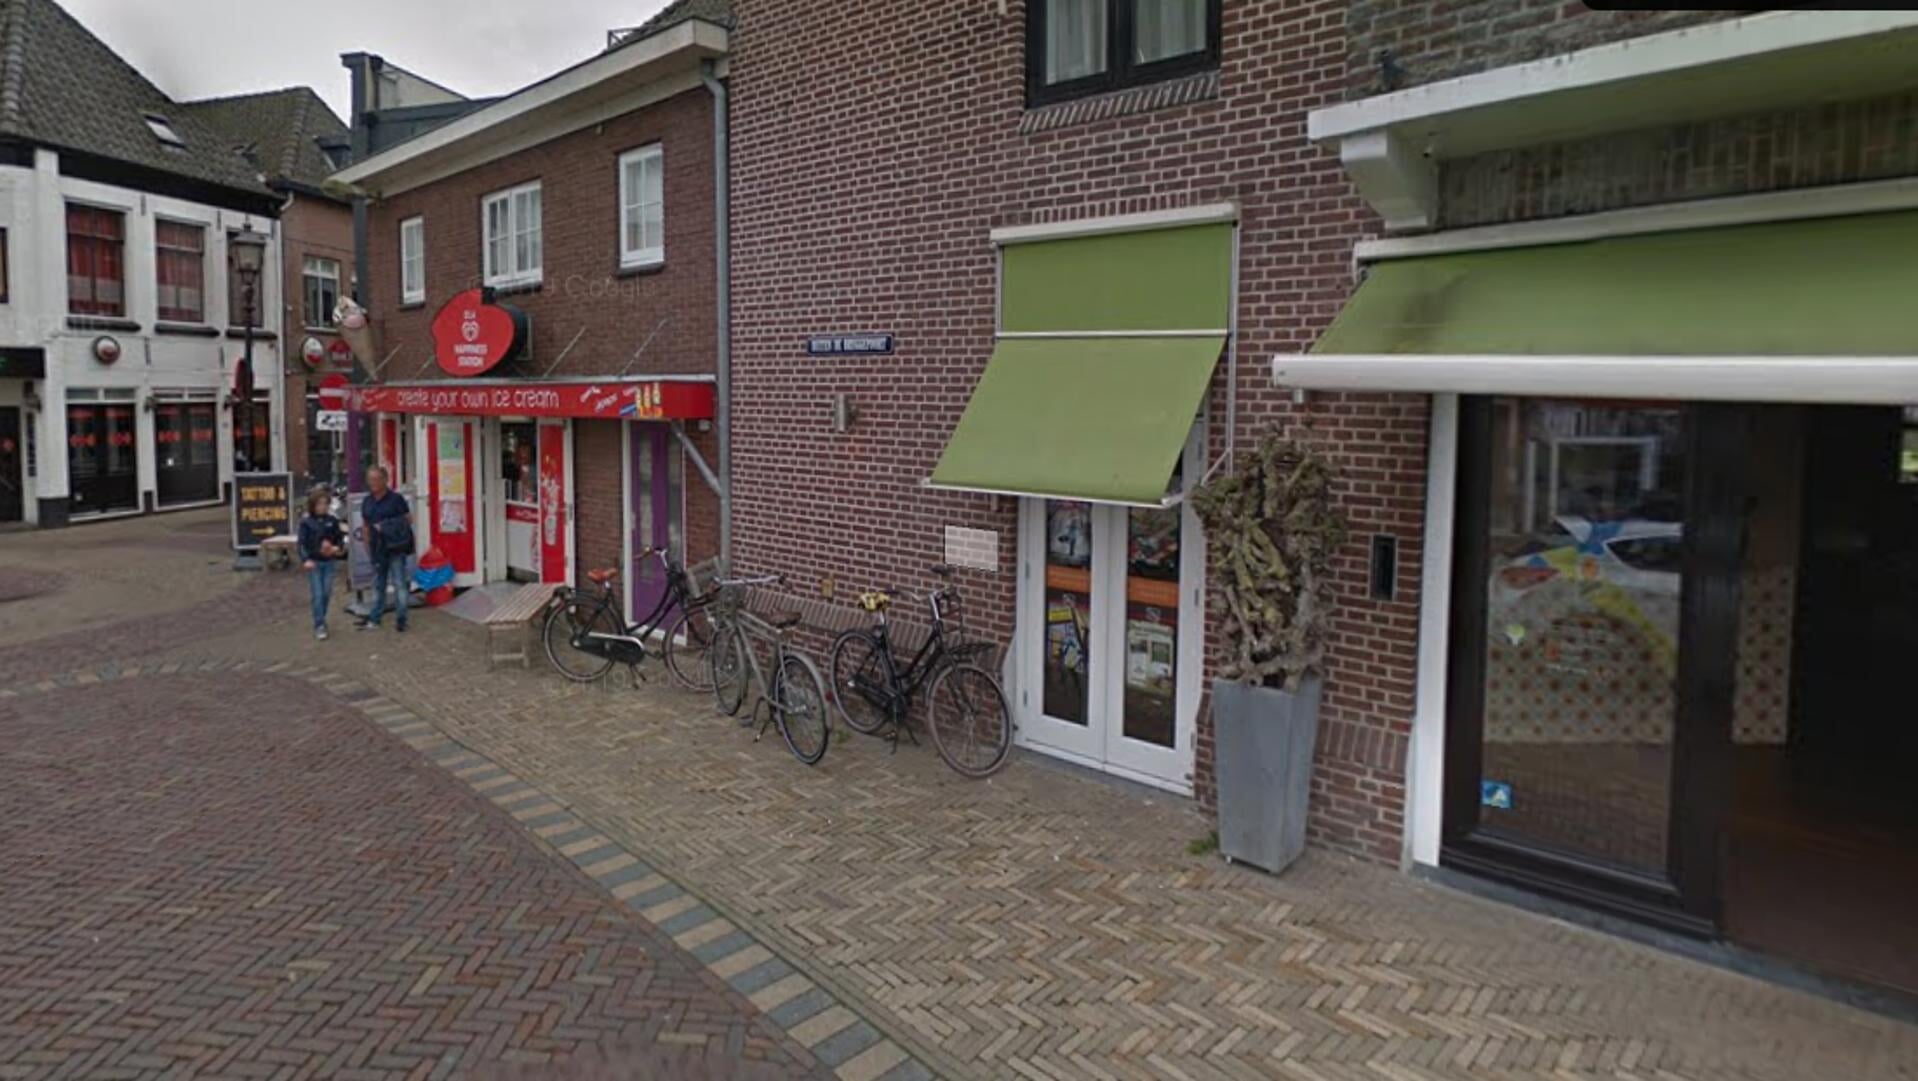 Bruggestraat in binnenstad Harderwijk mogelijk autoluw.